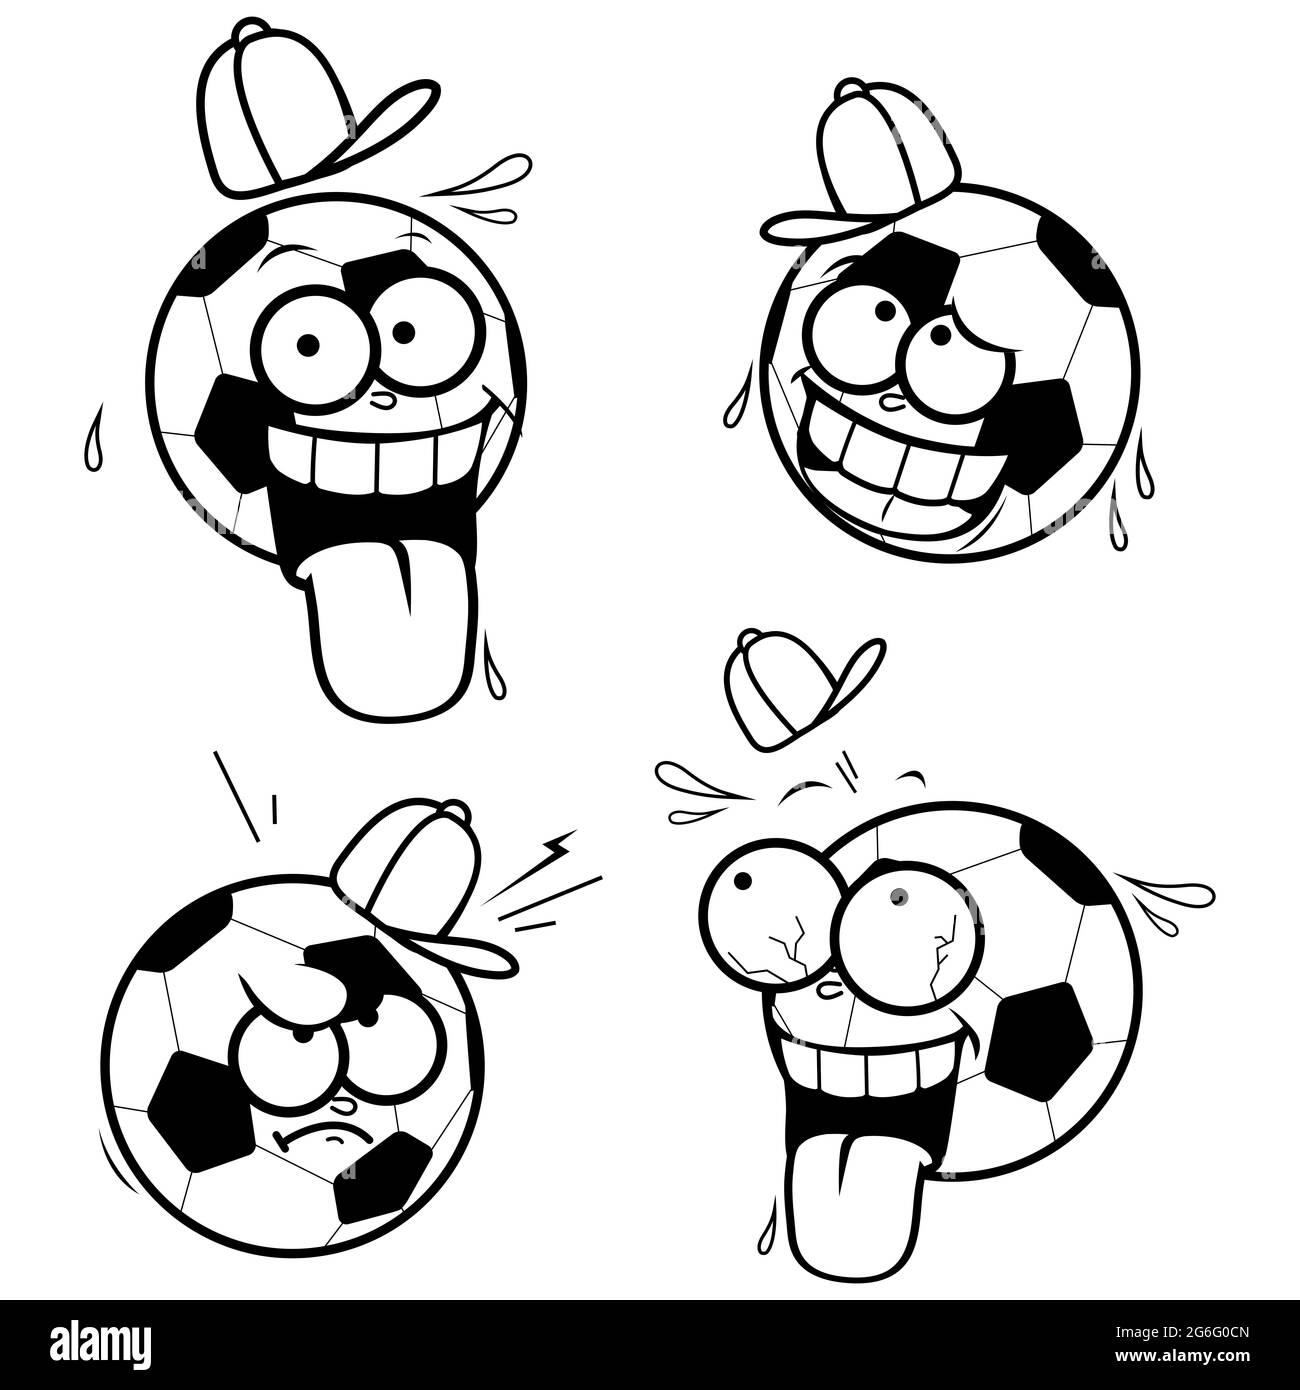 Ballons de football à dessin animé. Page de couleur noir et blanc Banque D'Images